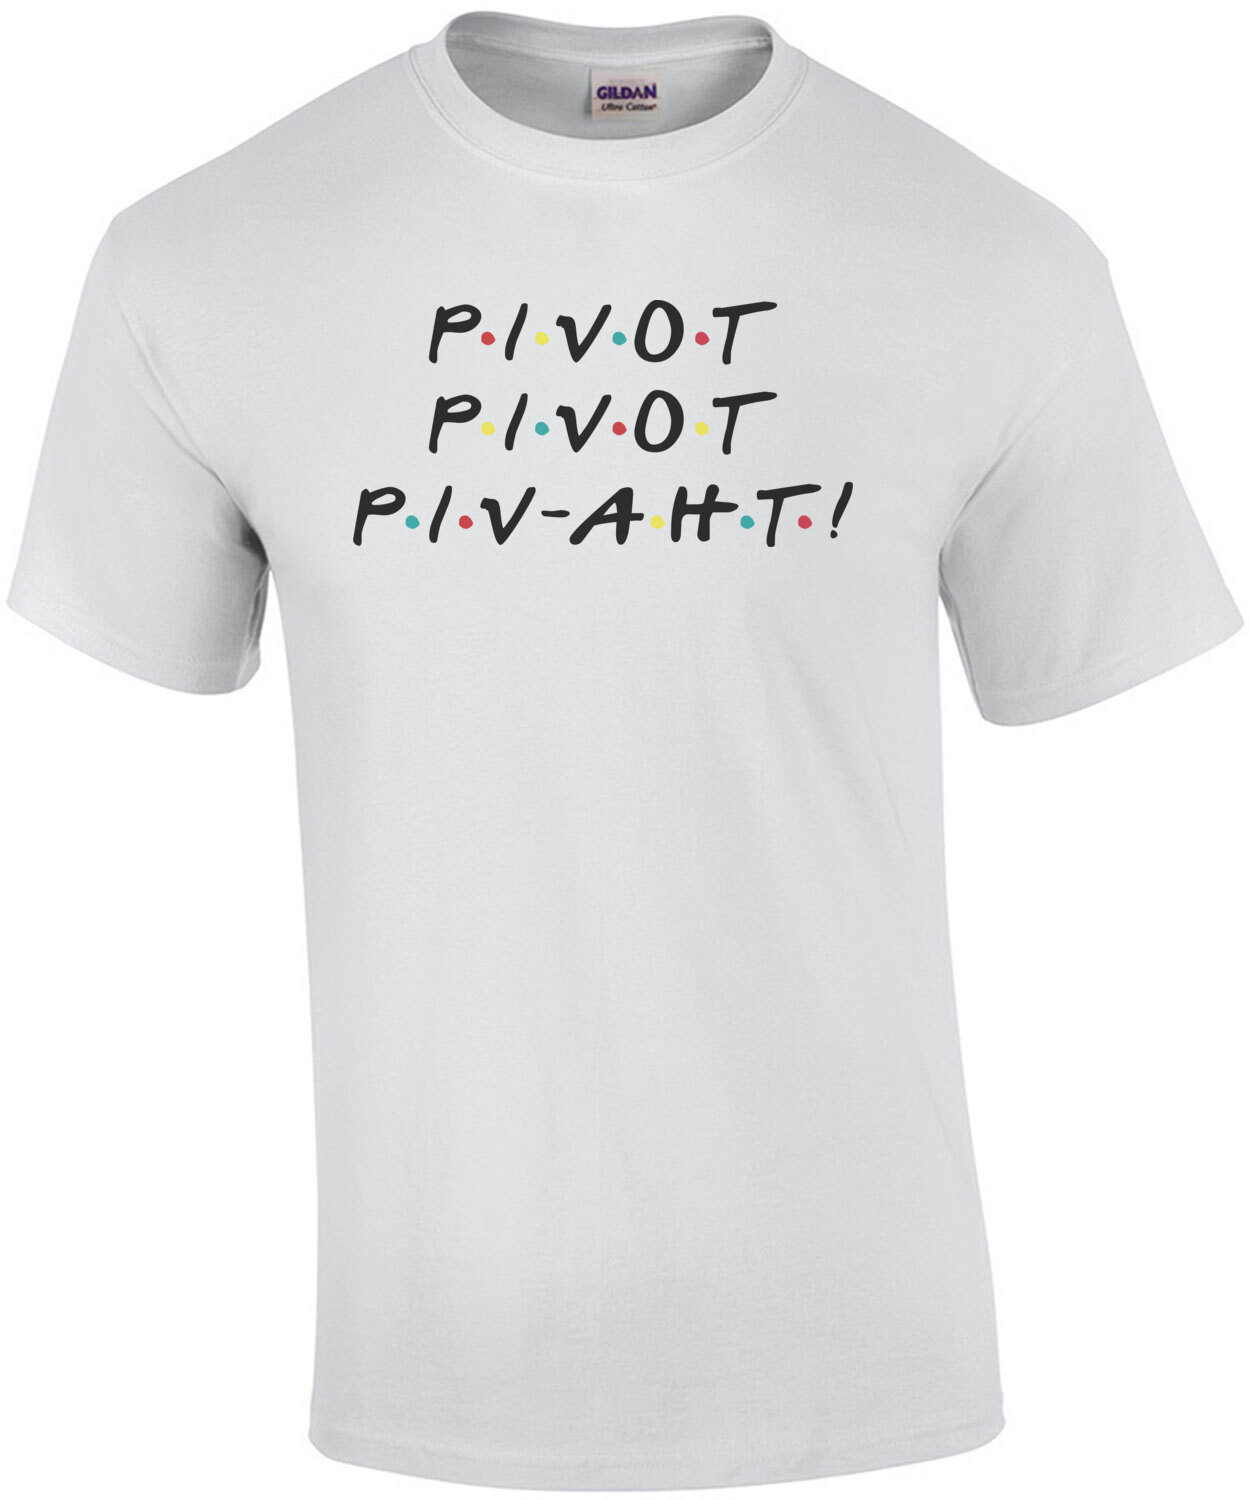 Pivot - Pivot - Pivaht - funny friends 90's t-shirt